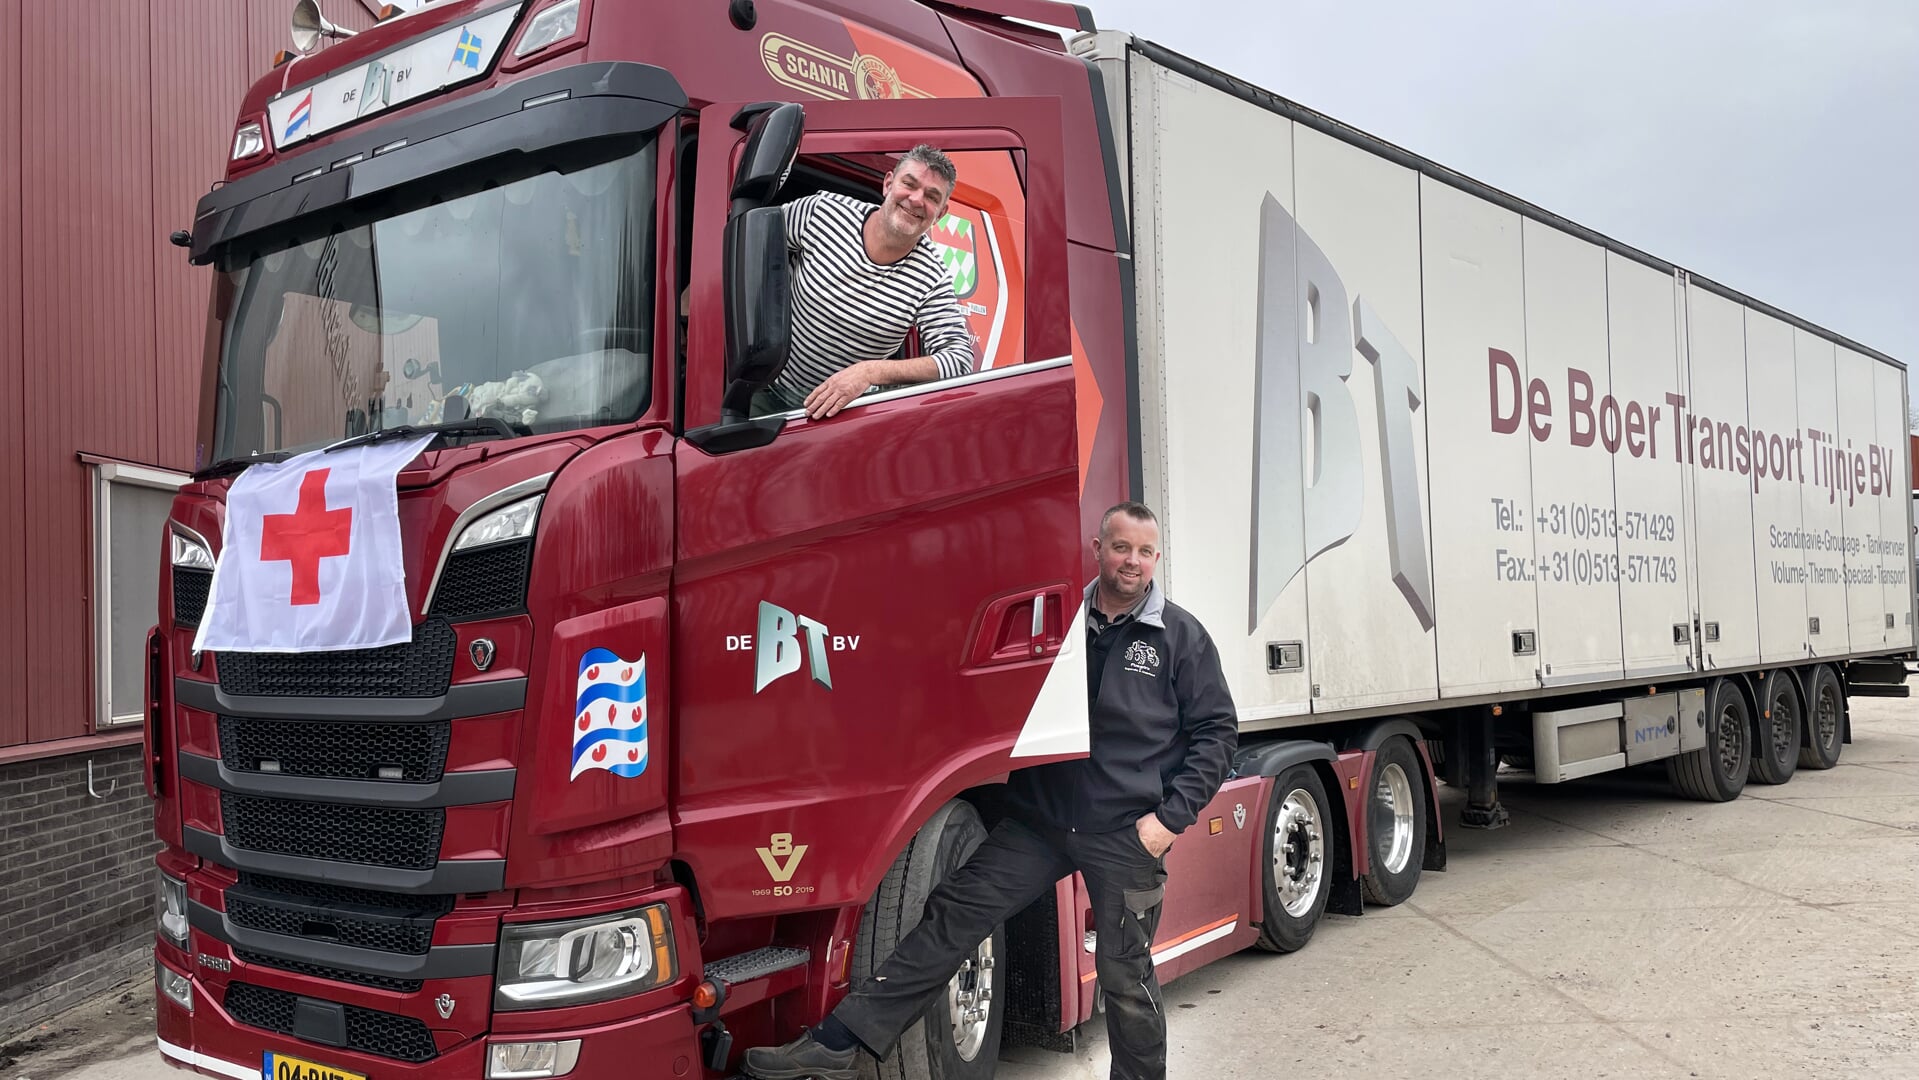 Jan Jeeninga en Pieter Ploegstra bij de vrachtwagen van De Boer Transport.